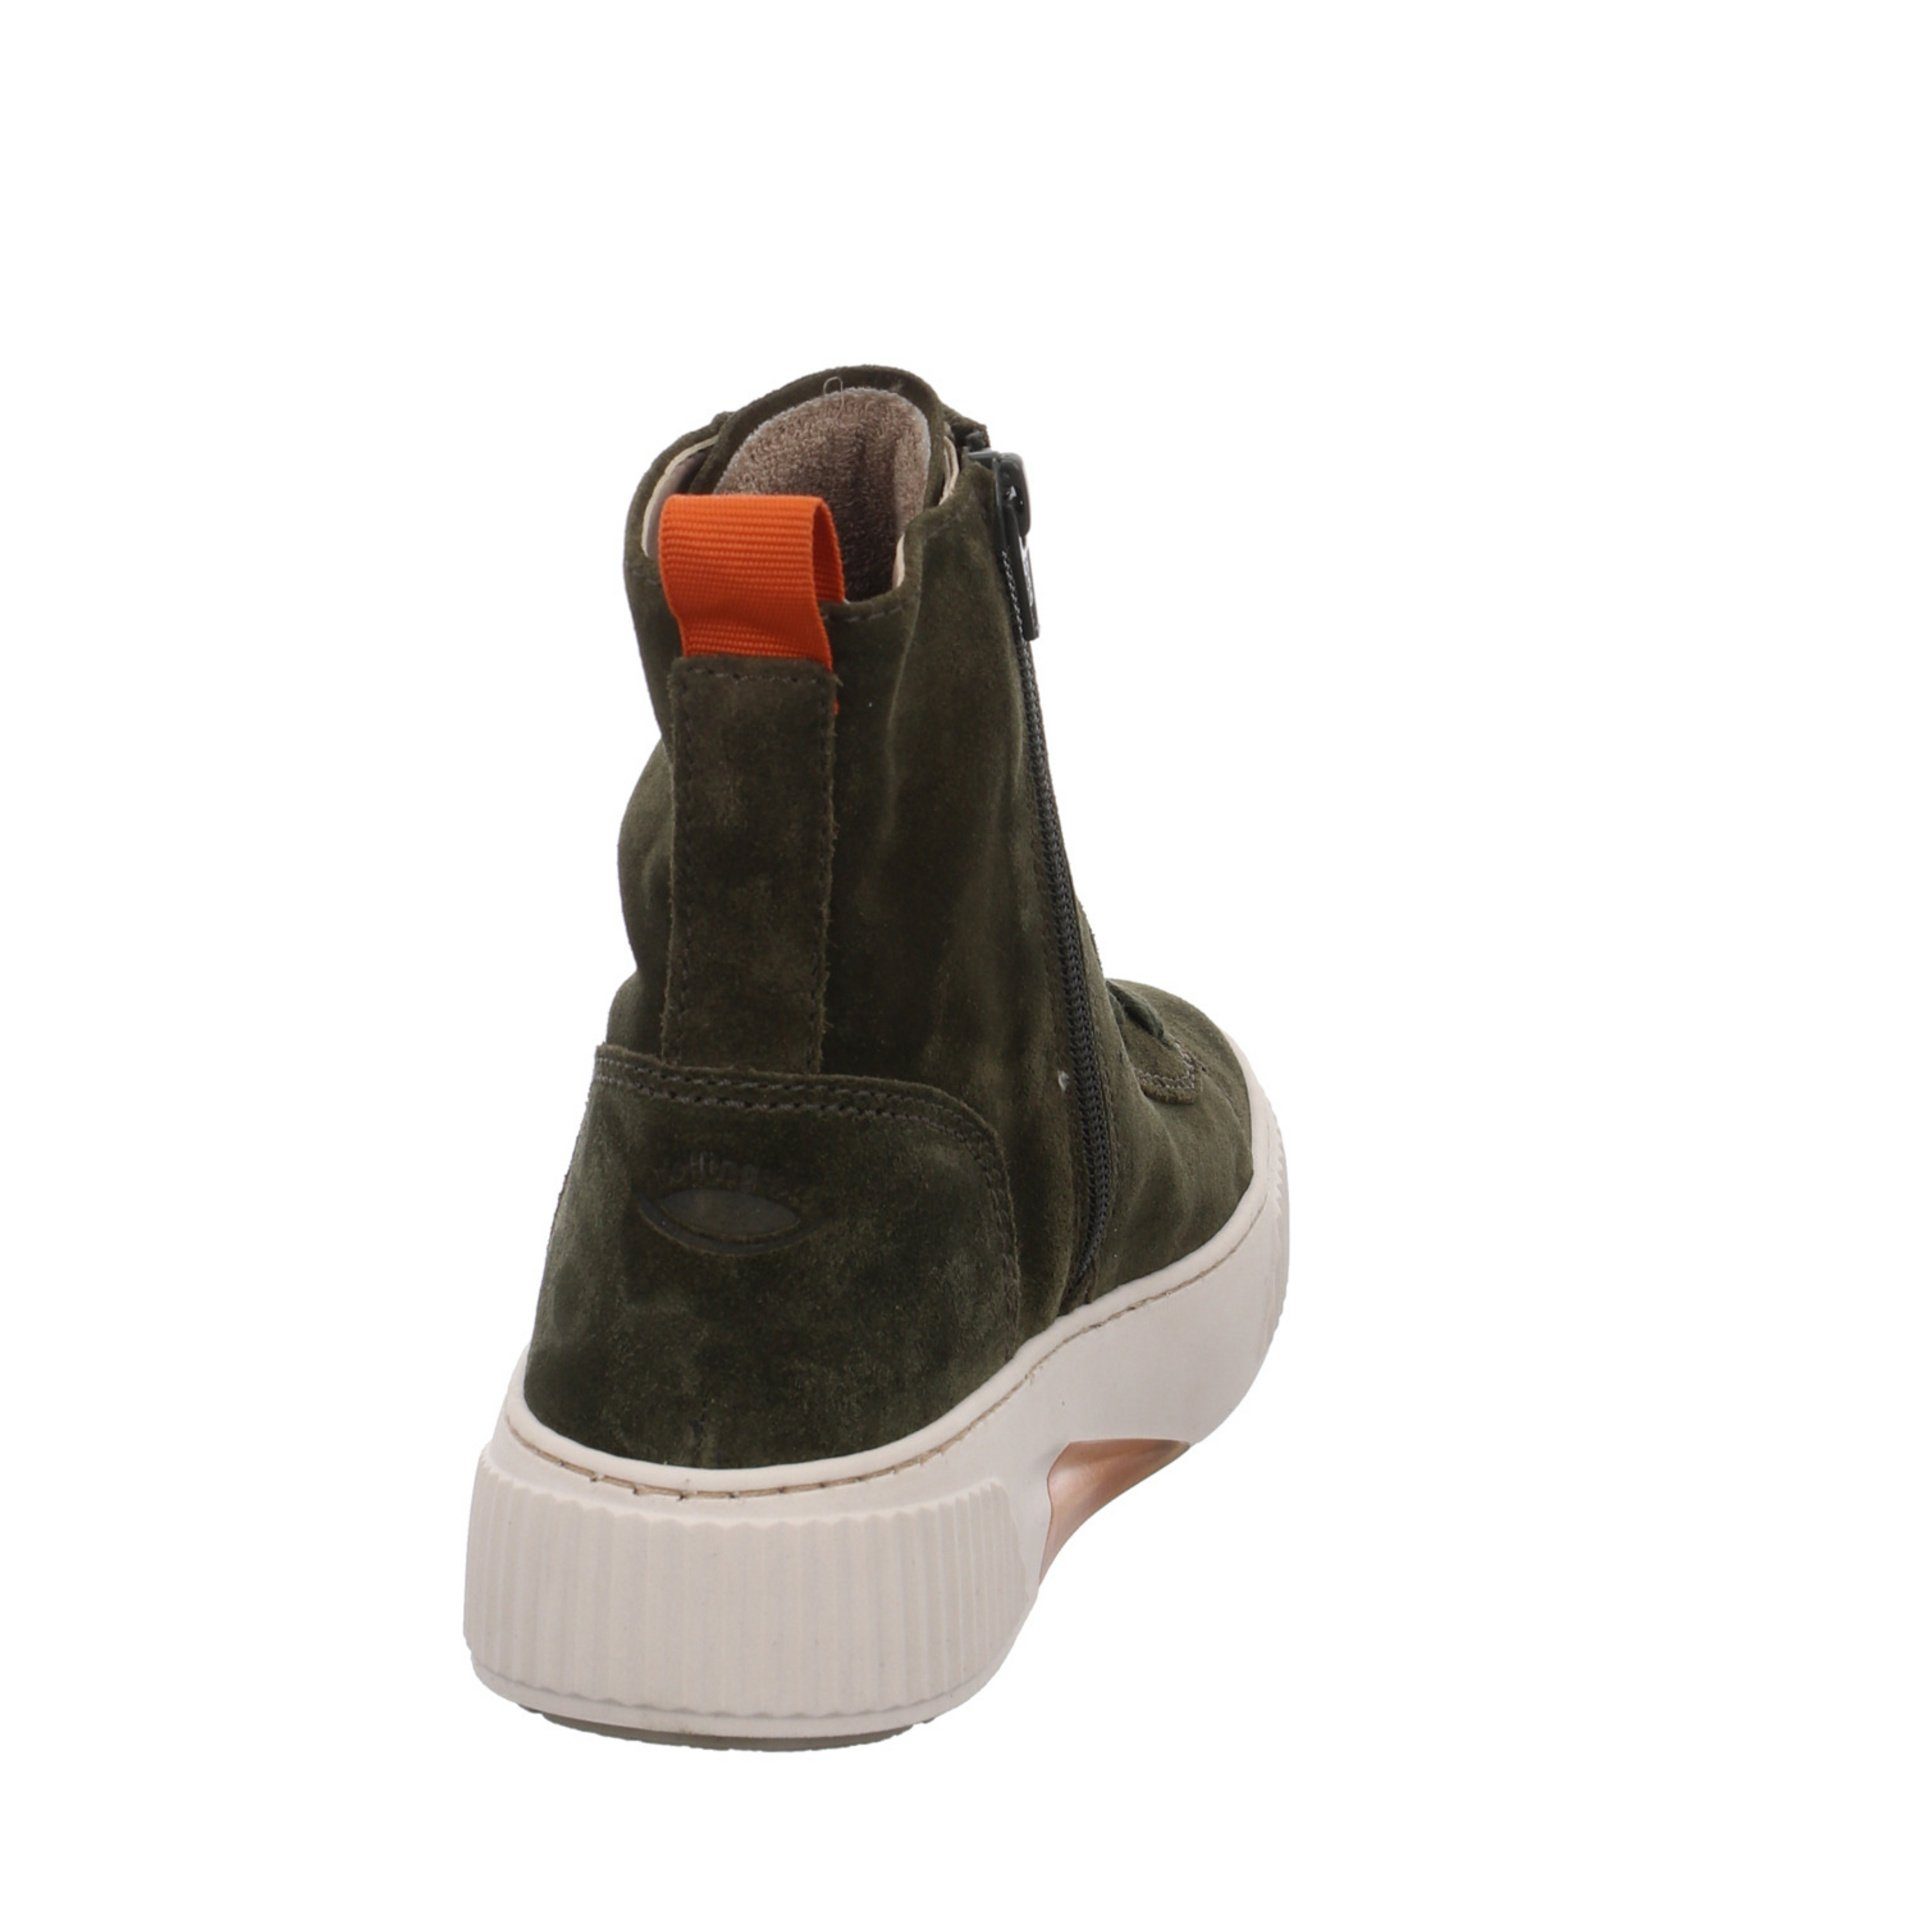 Stiefel Grün Gabor (bosco/orange) Stiefel Klassisch Veloursleder Schuhe Boots Elegant Damen